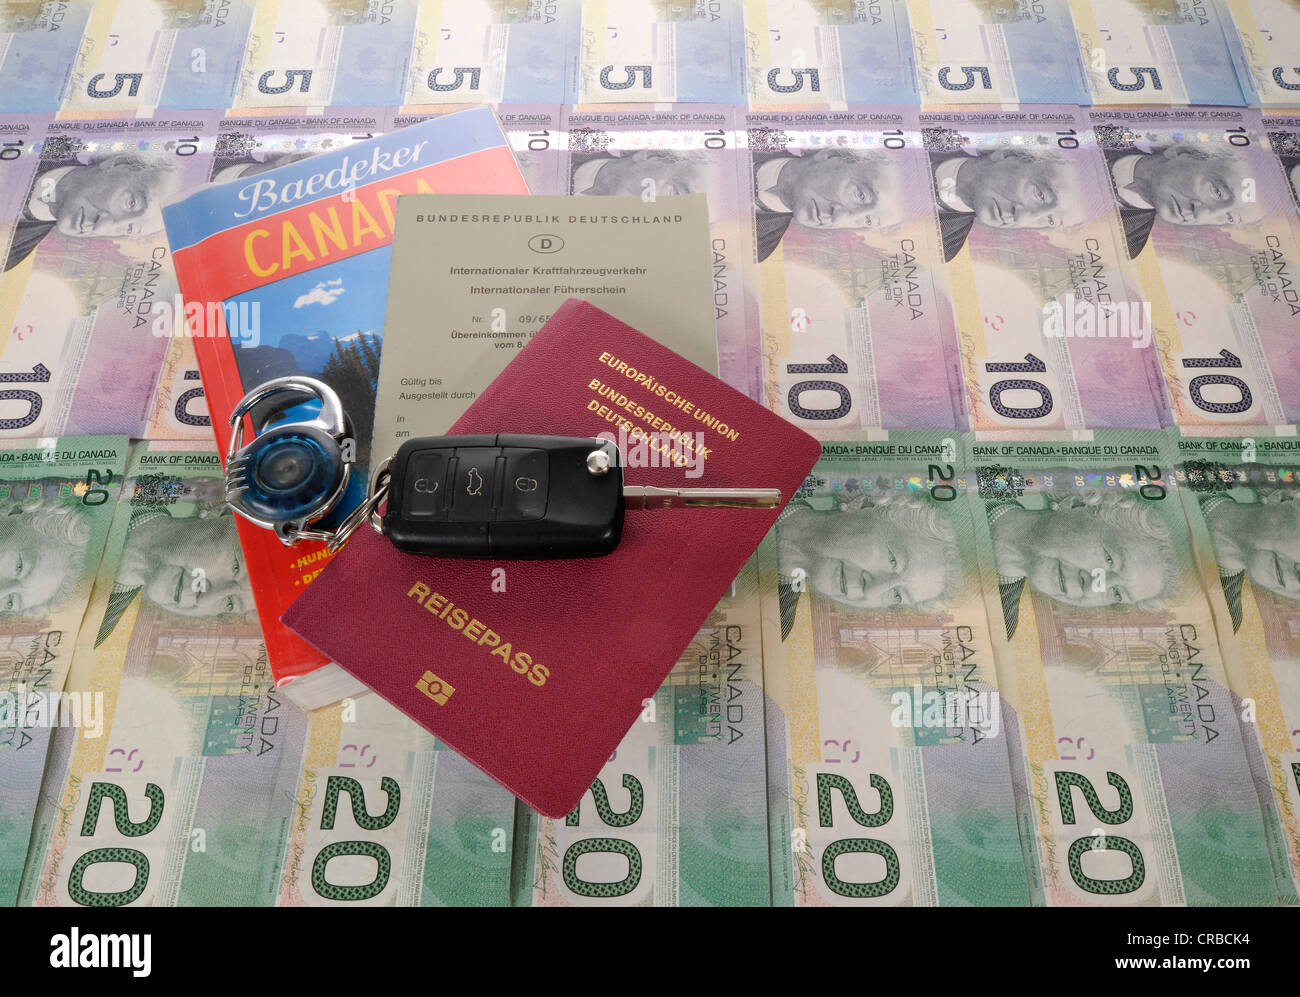 Zündschlüssel, internationaler Führerschein, Reisepass der Bundesrepublik Deutschland, Reiseführer für Kanada und verschiedenen Stockfoto